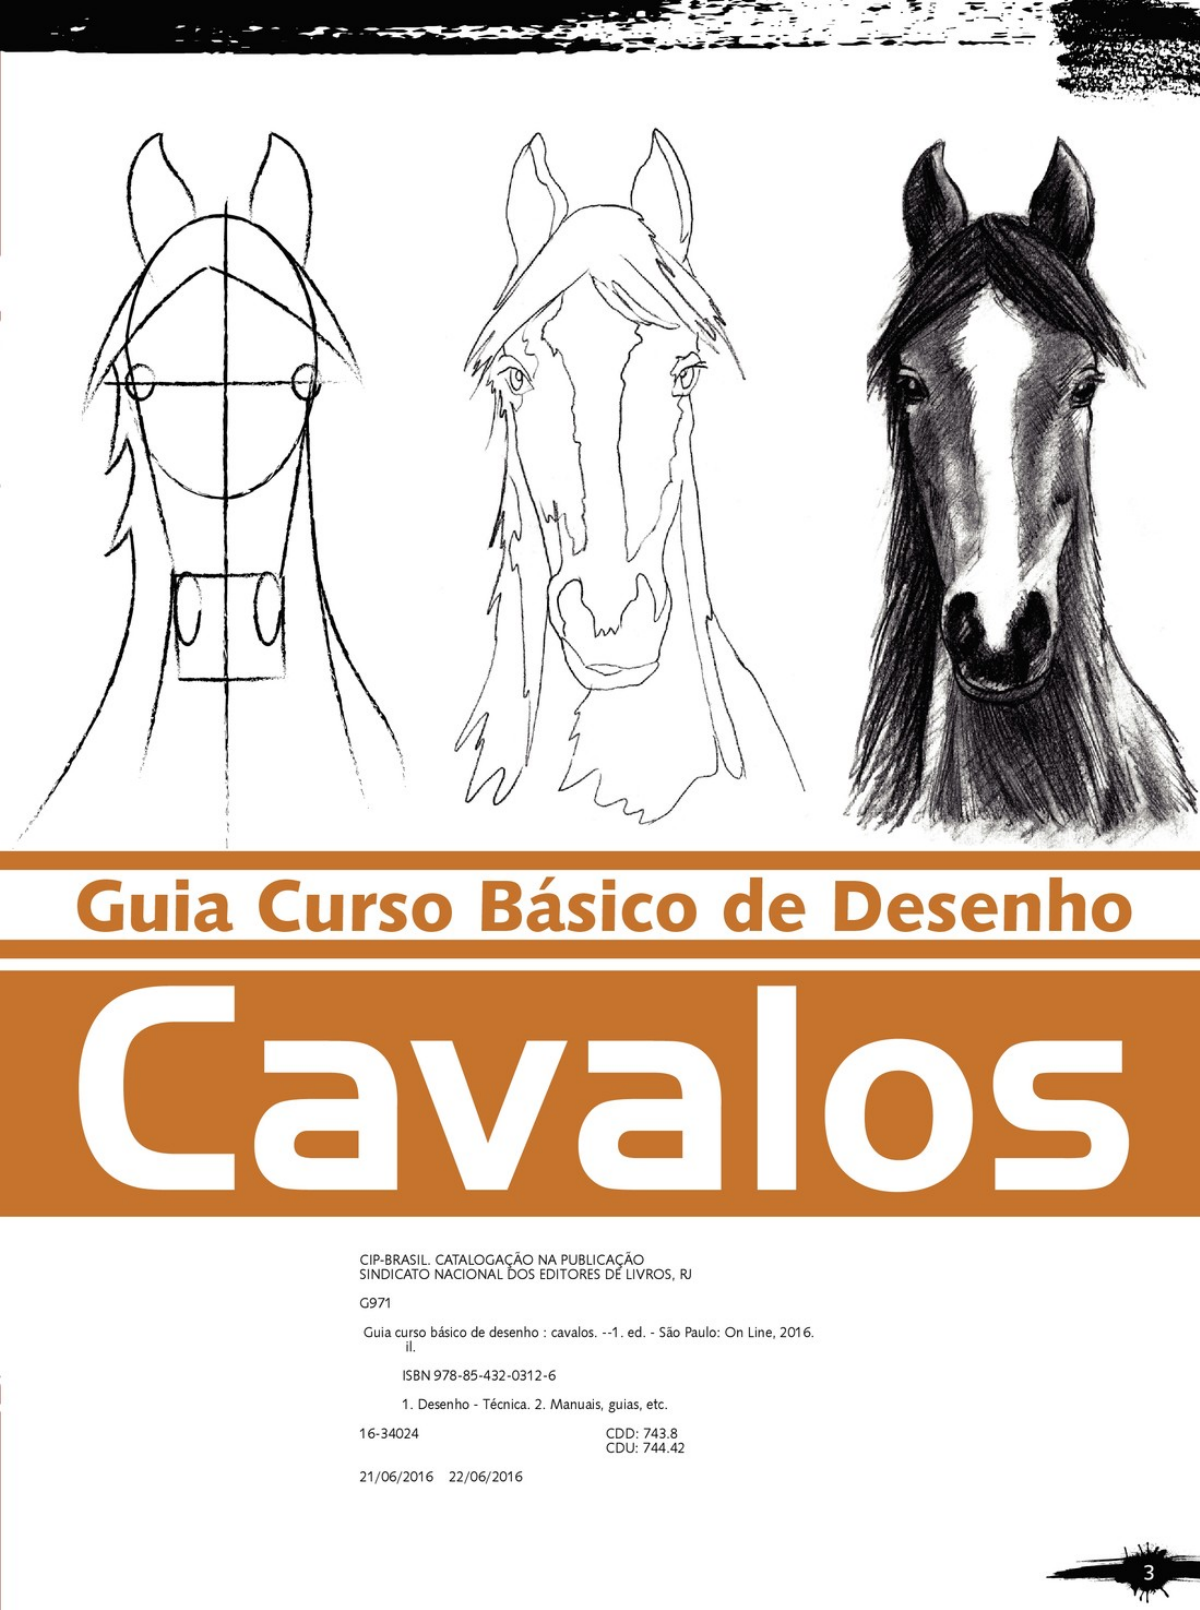  Guia Curso Básico de Desenho - Cavalos (Portuguese